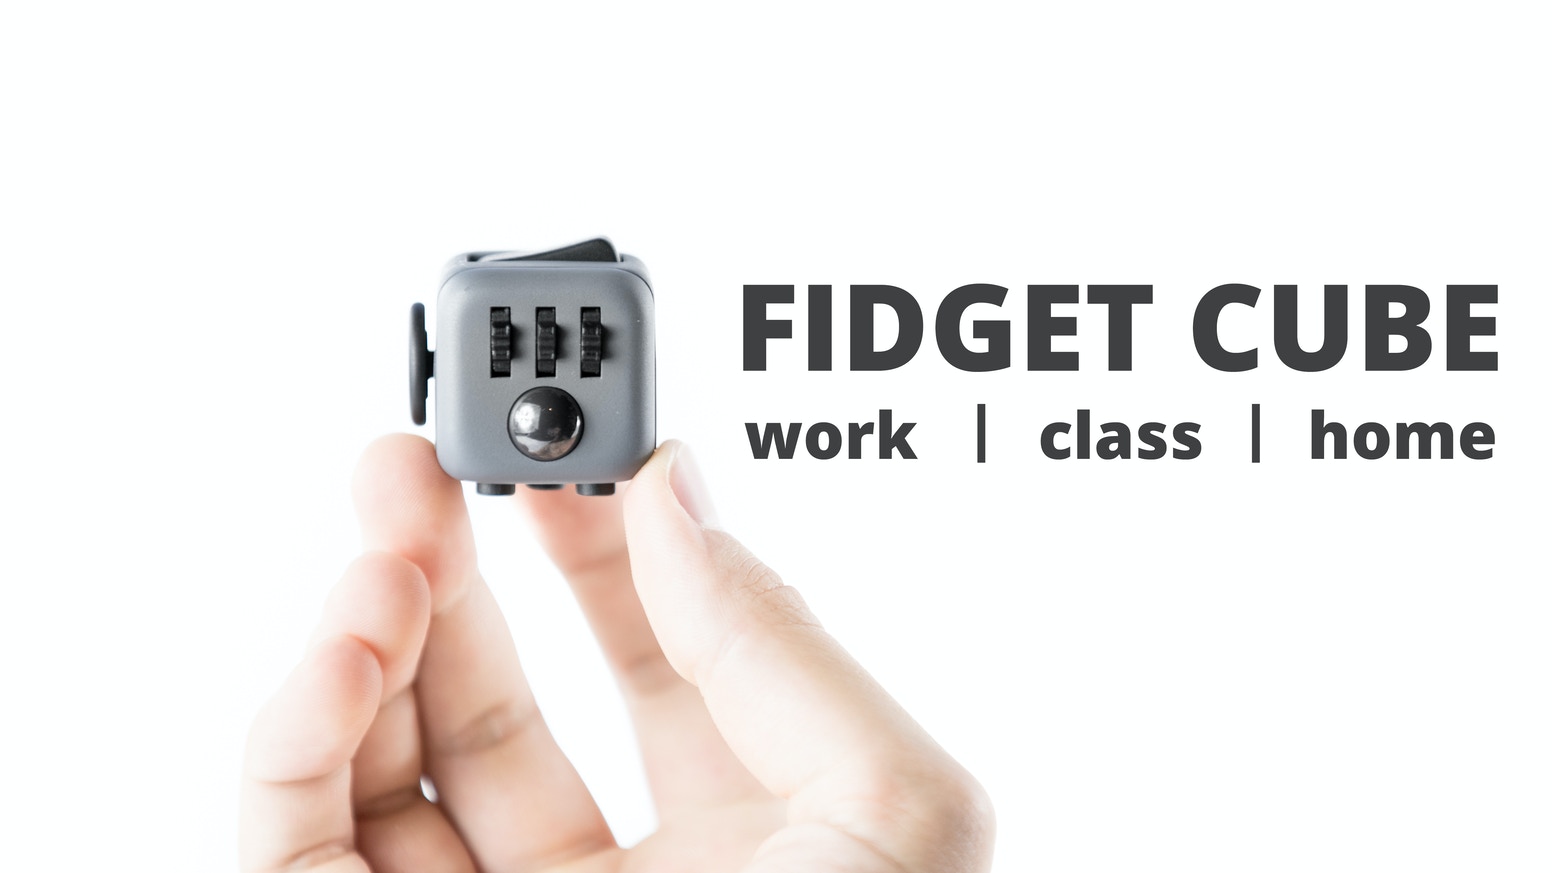 Fidget cube crowdfunding